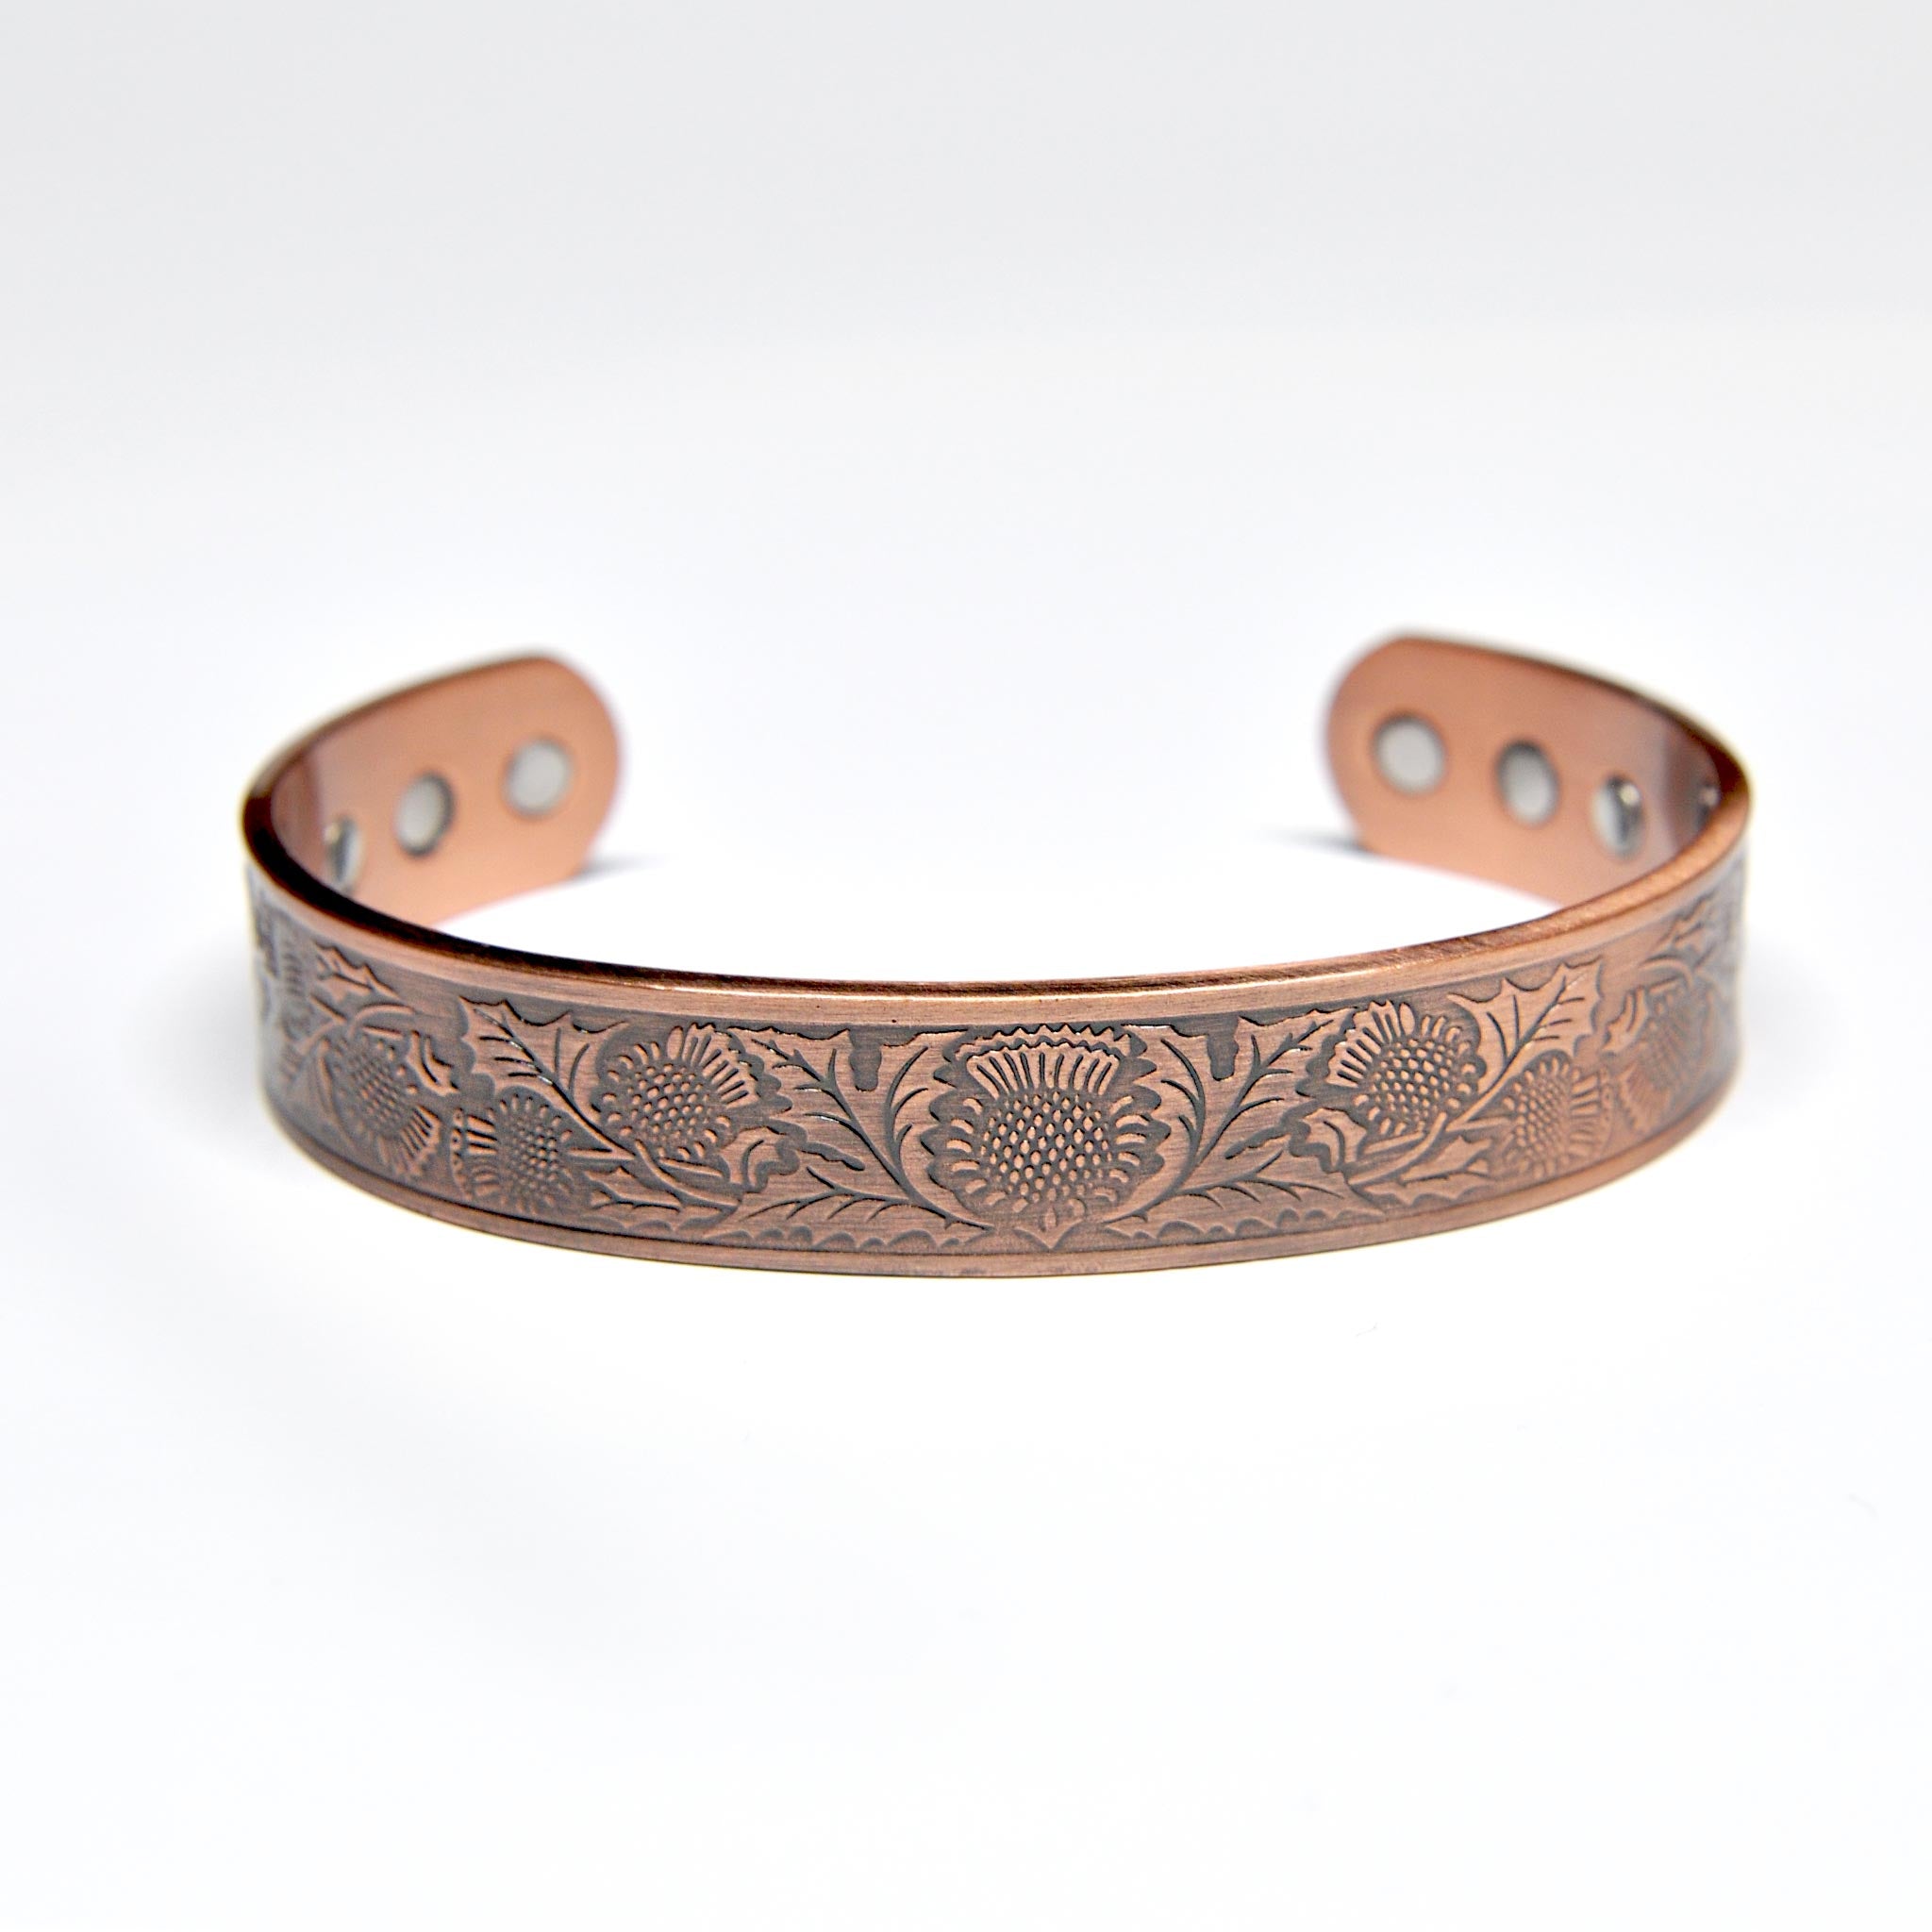 copper bracelet for men